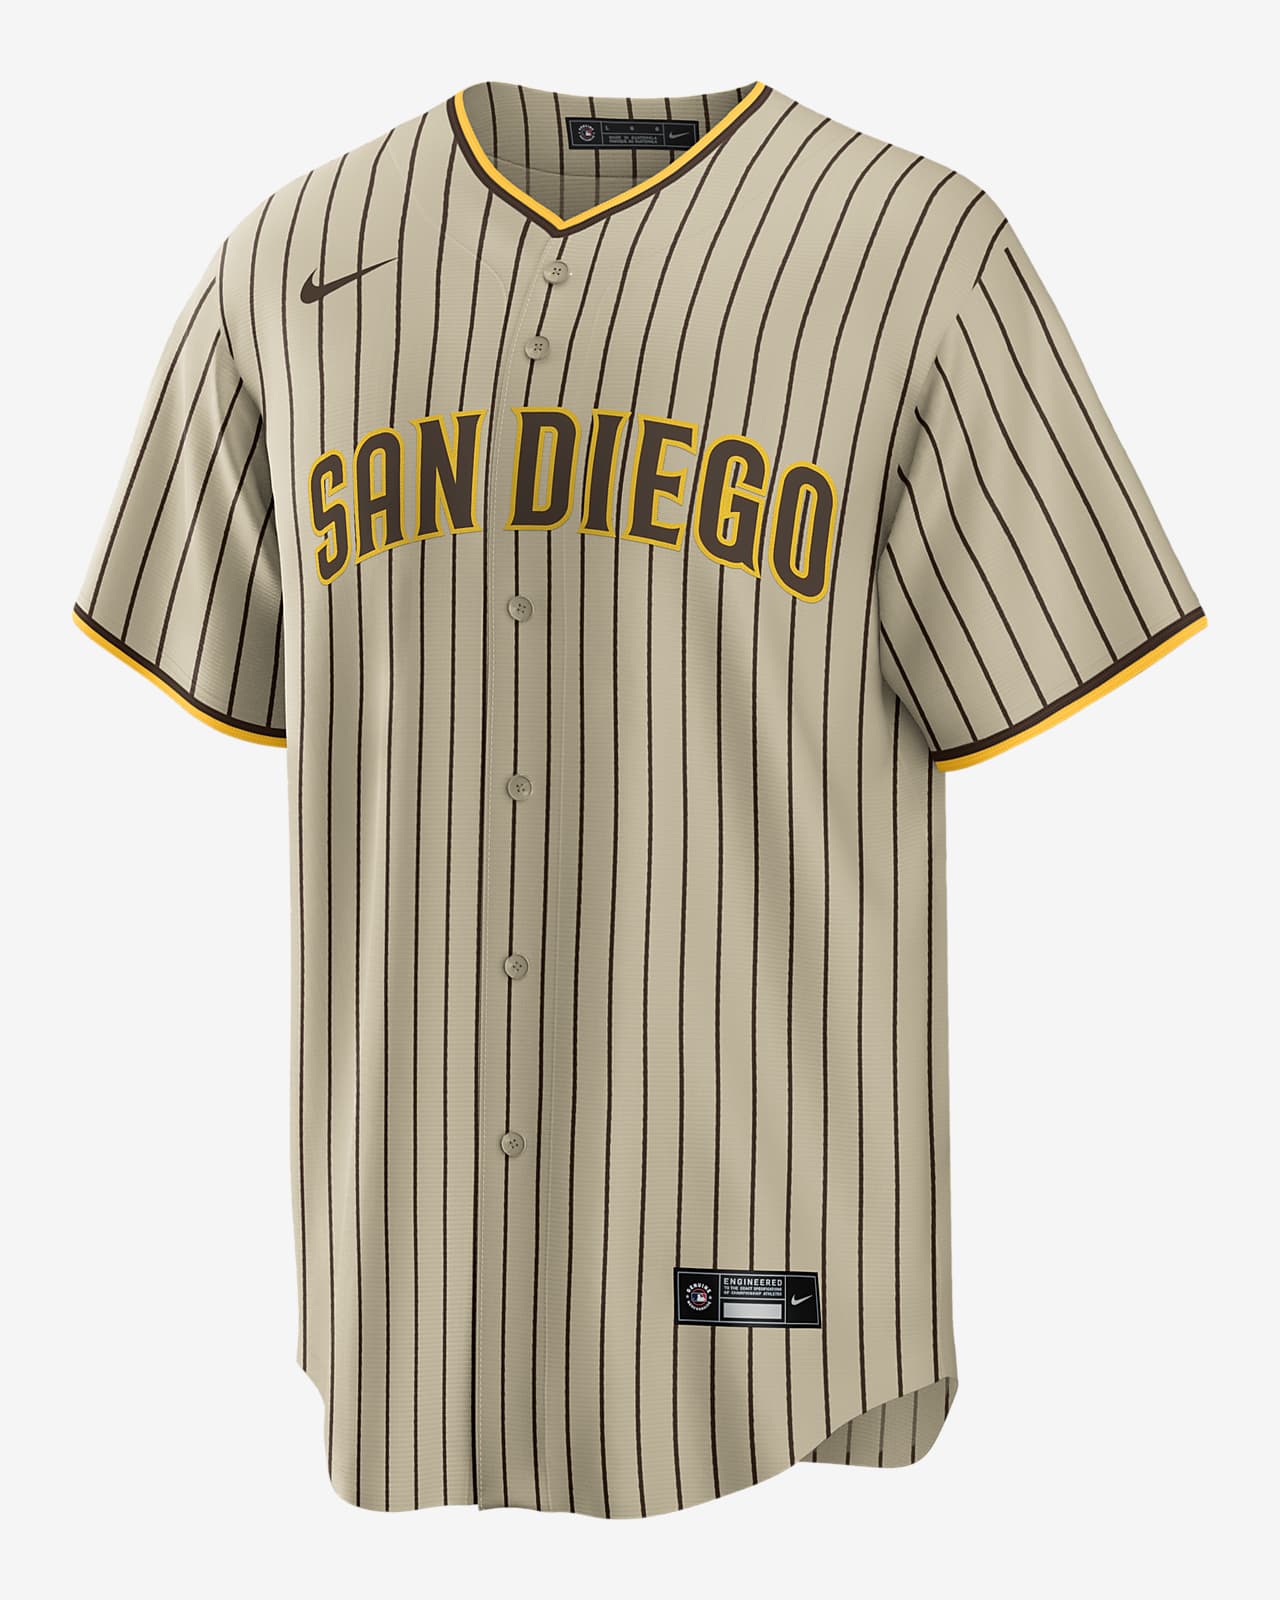 Muestra San Diego nuevos uniformes